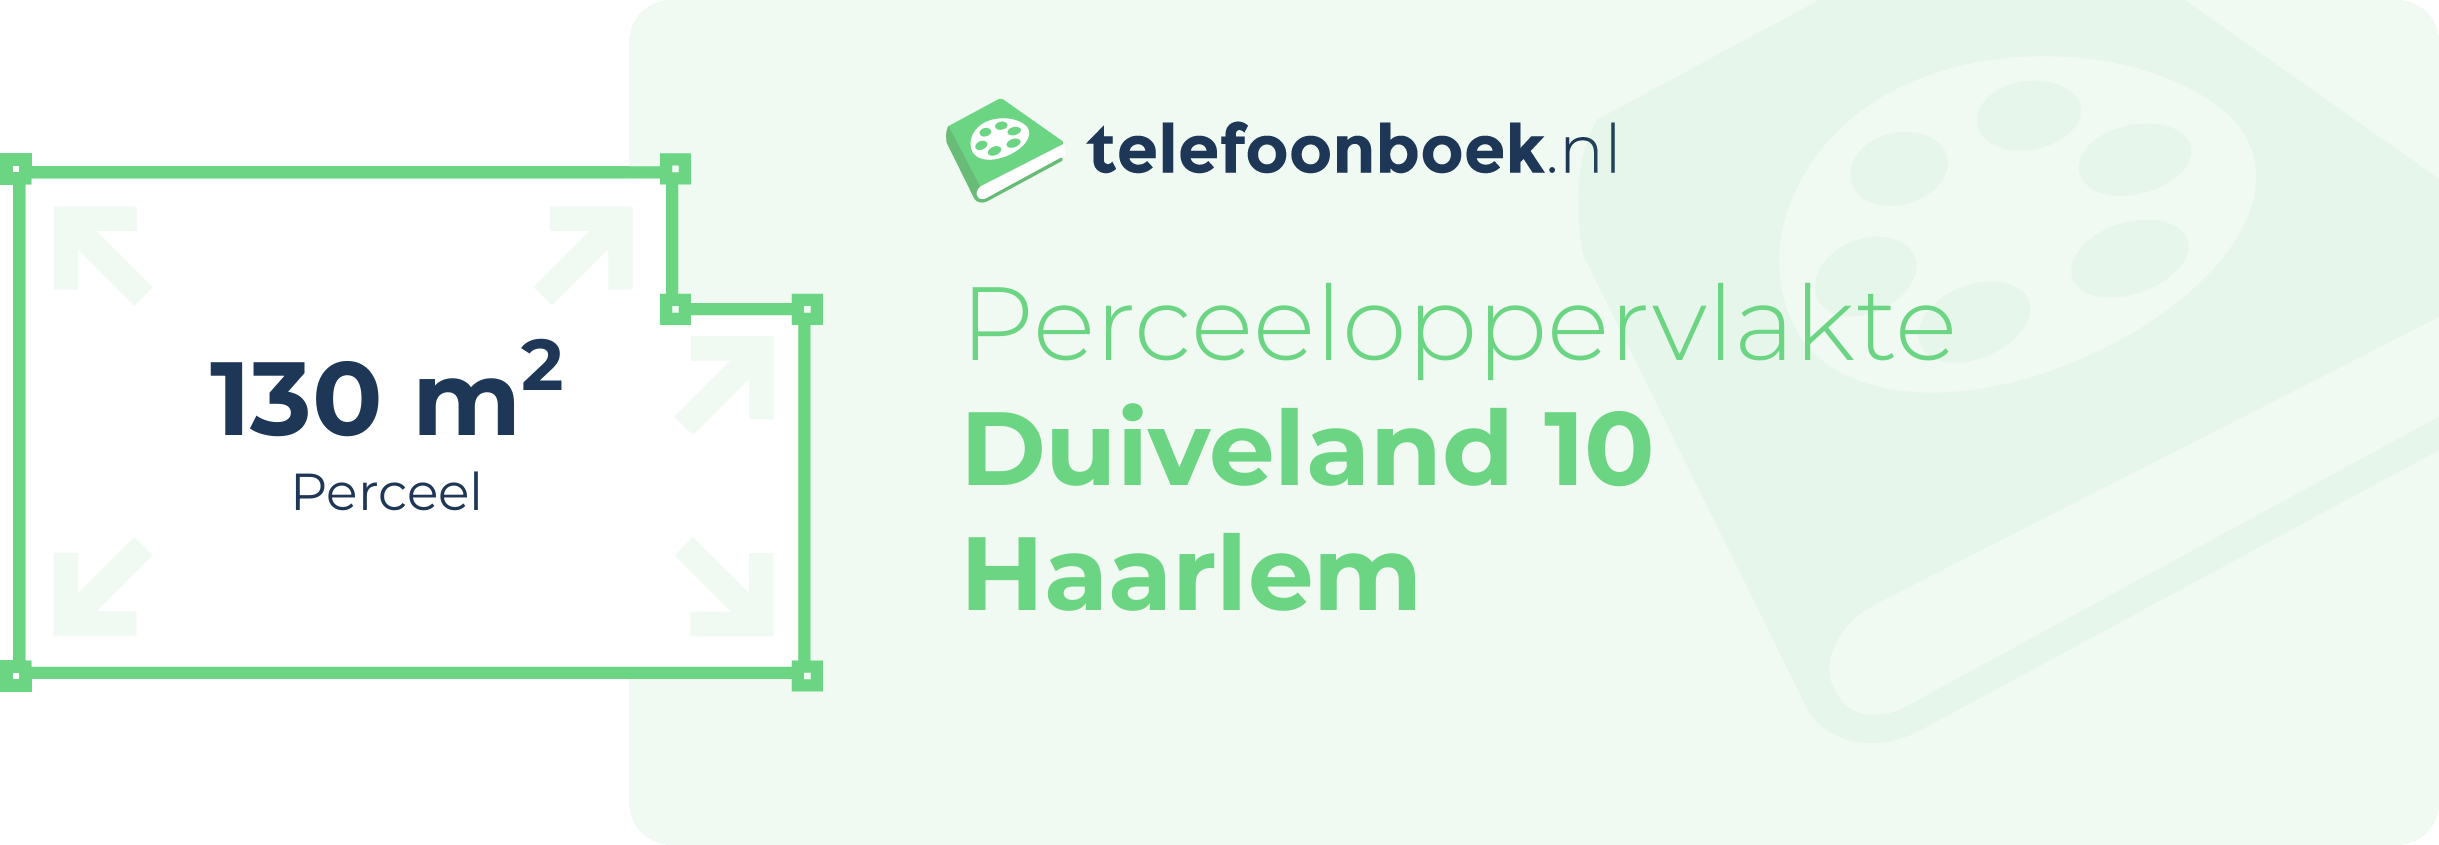 Perceeloppervlakte Duiveland 10 Haarlem